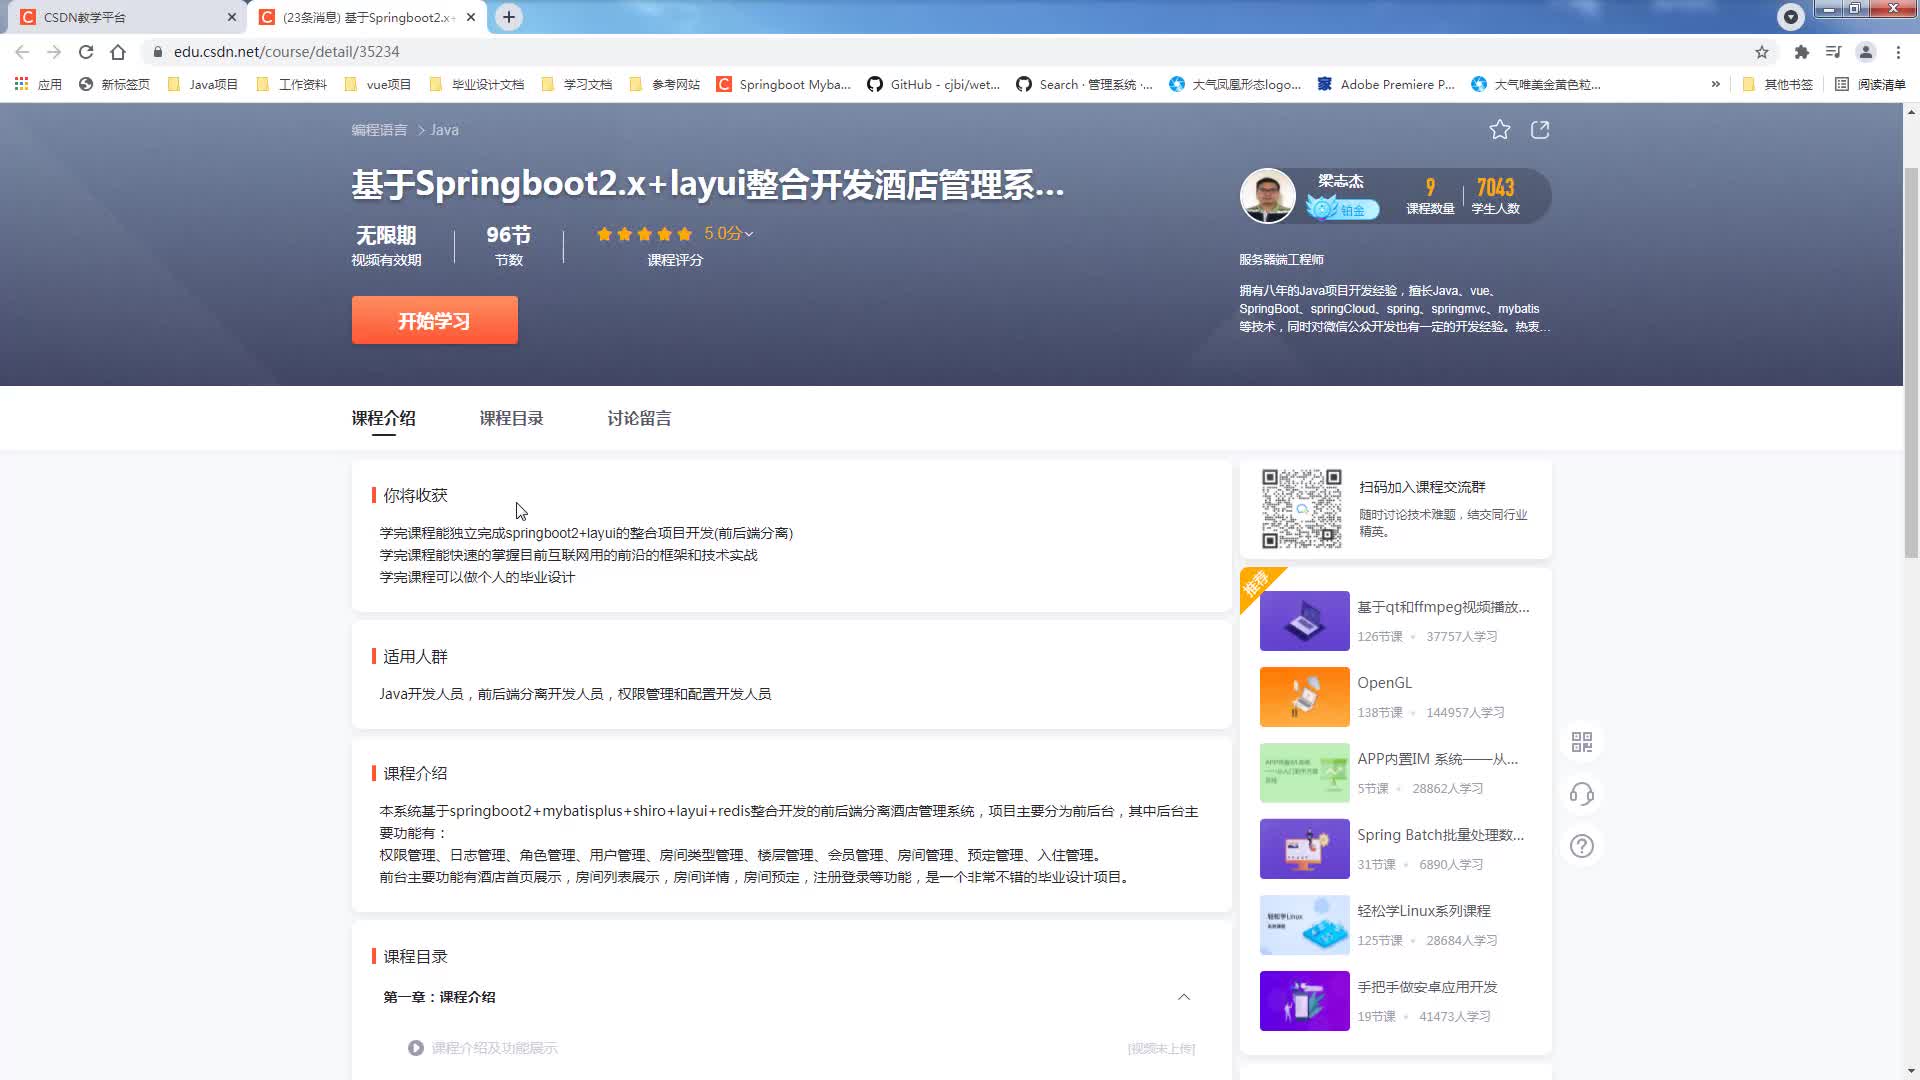 基于Springboot2.x+layui整合开发酒店管理系统 后台篇